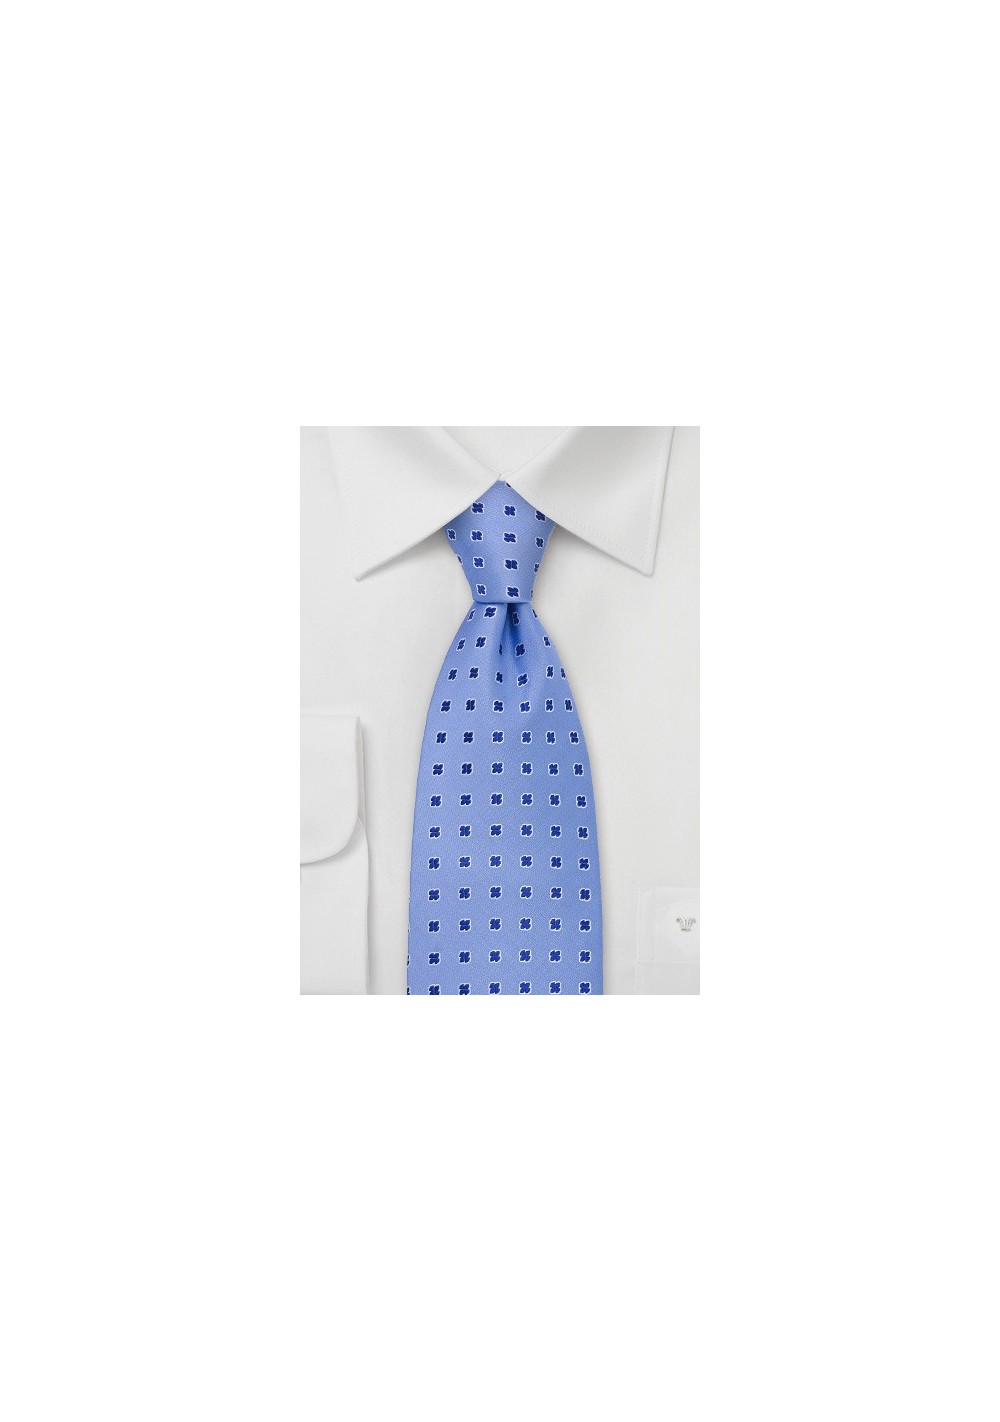 Light Blue Silk Tie by Designer Chevalier